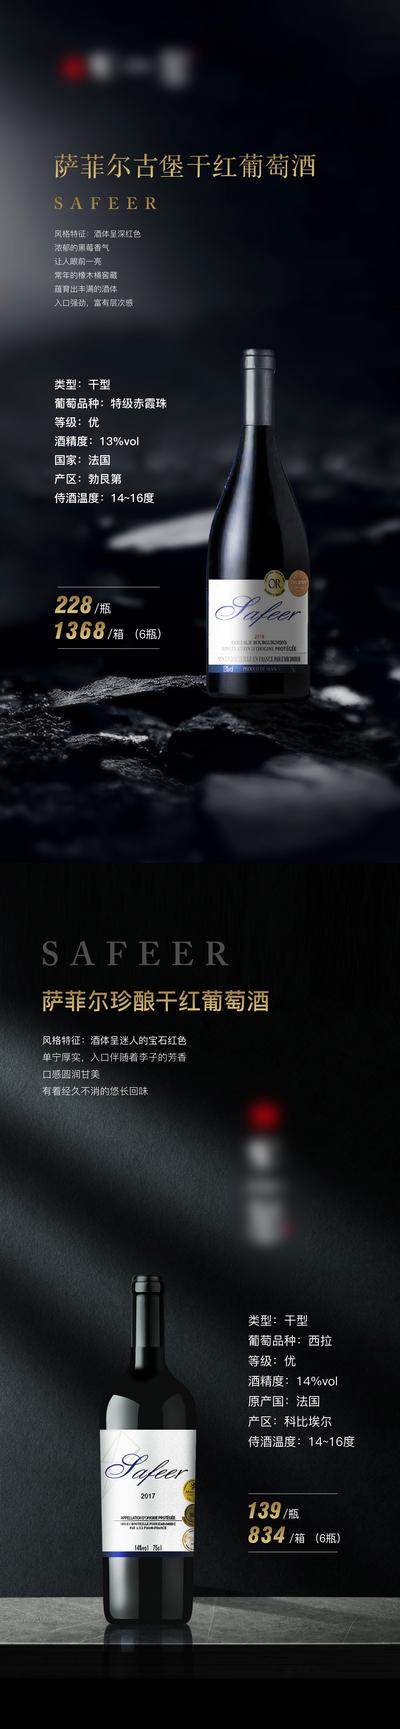 【南门网】广告 海报 酒水 红酒 高端 西餐 品质 系列